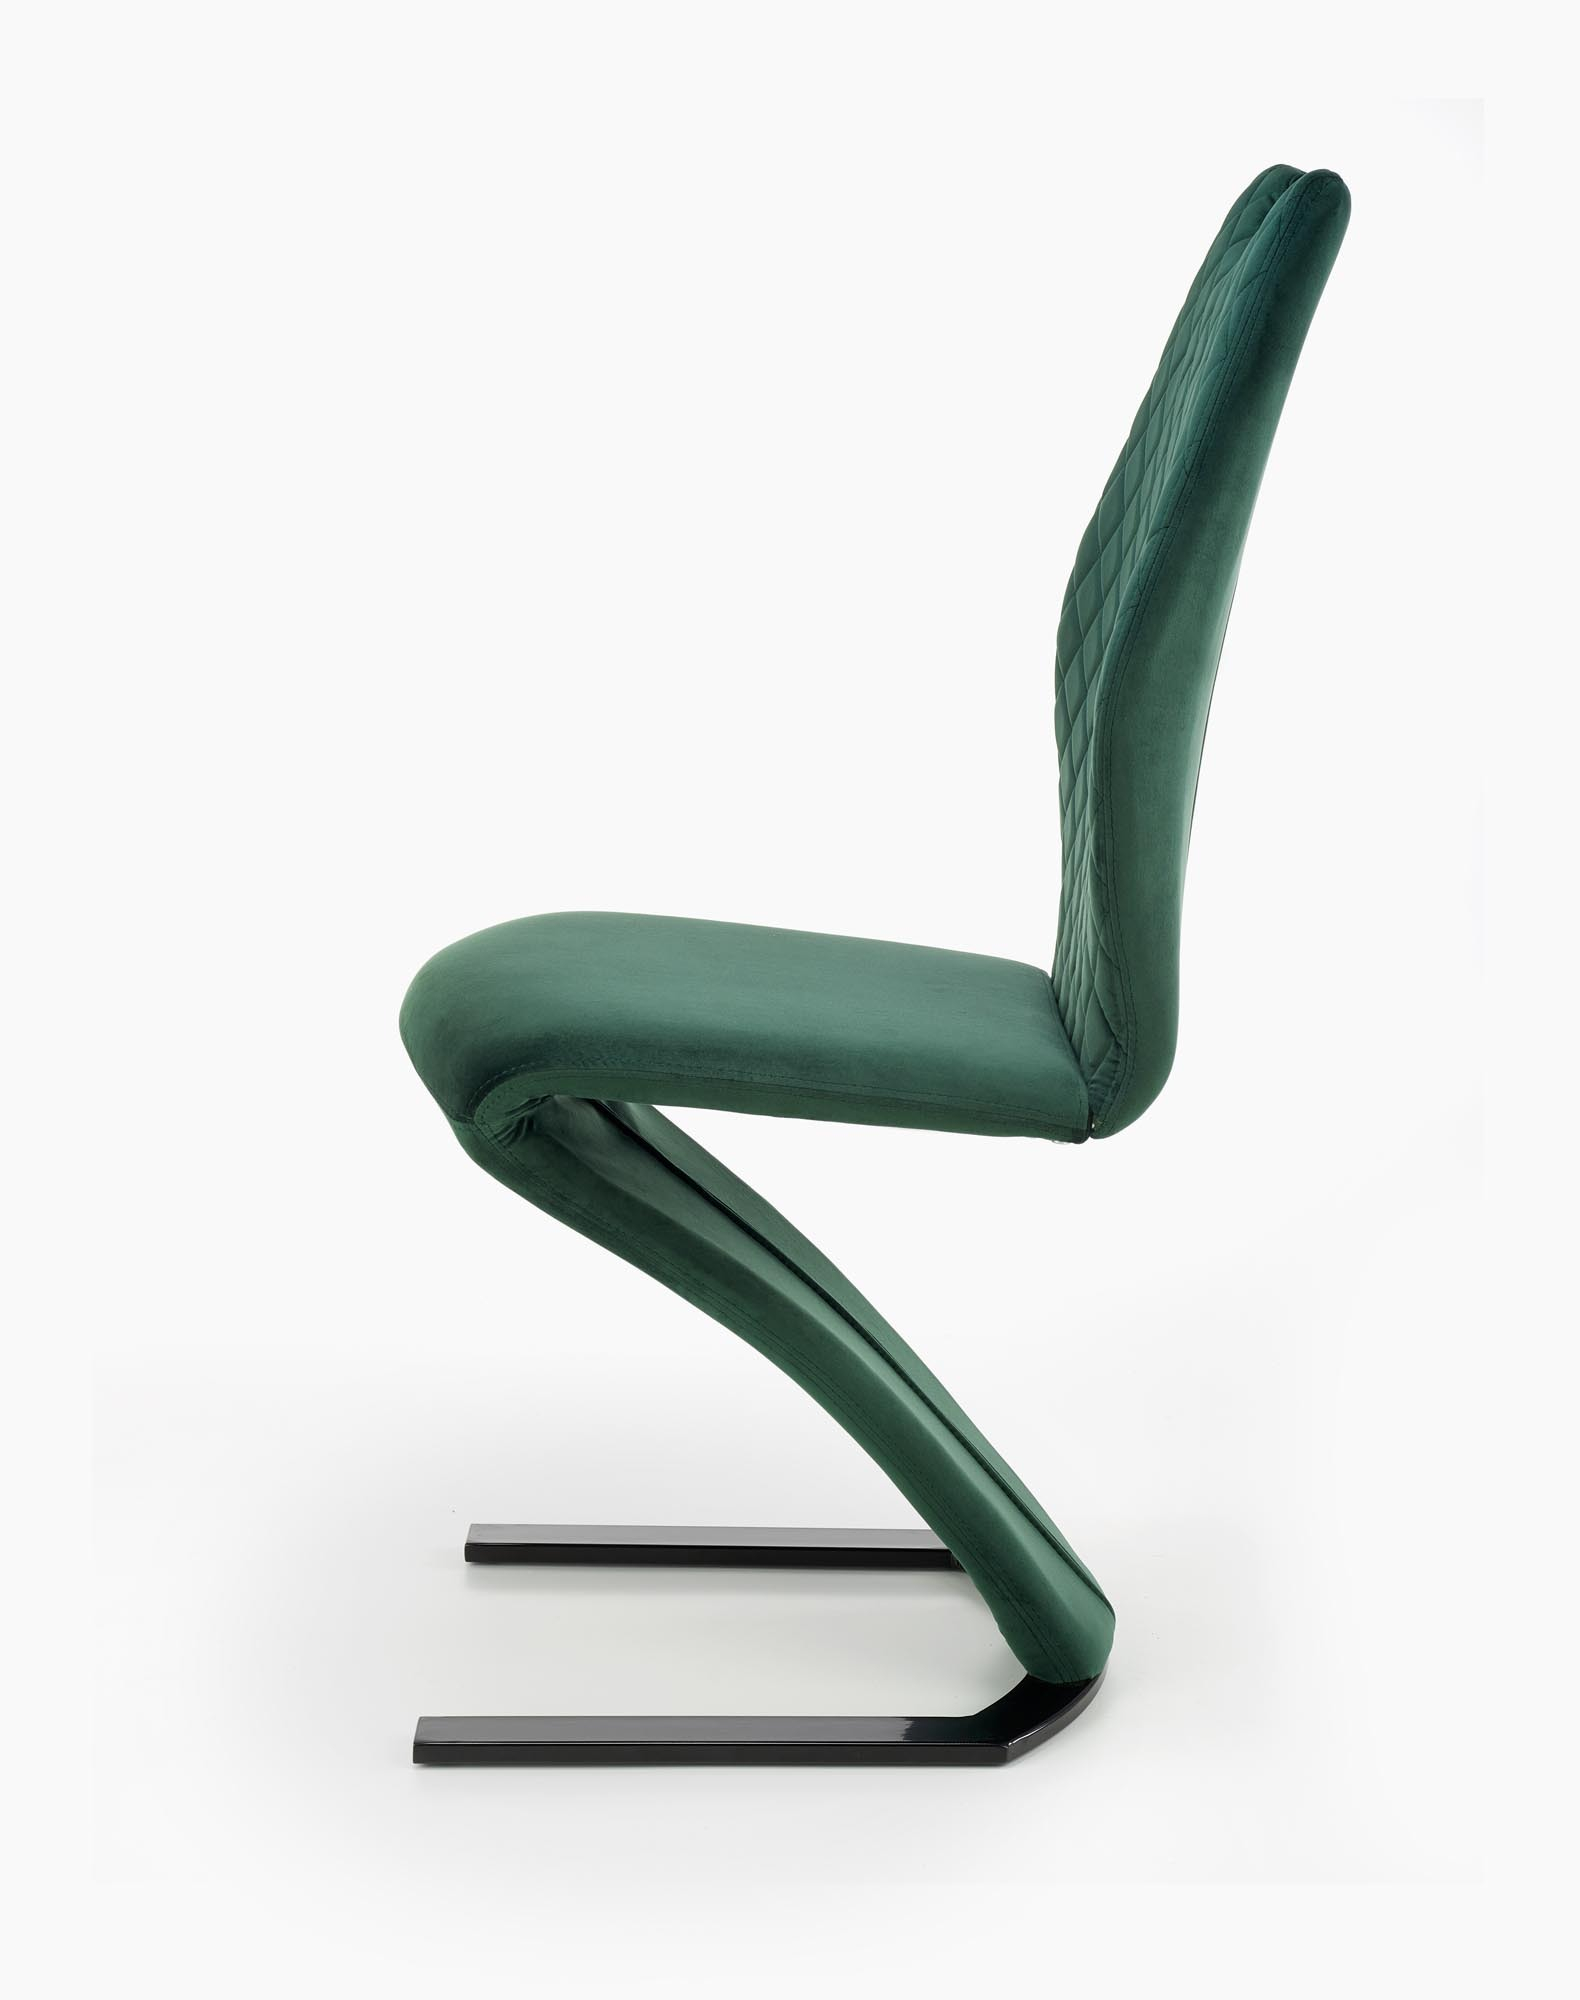 K442 krzesło ciemny zielony